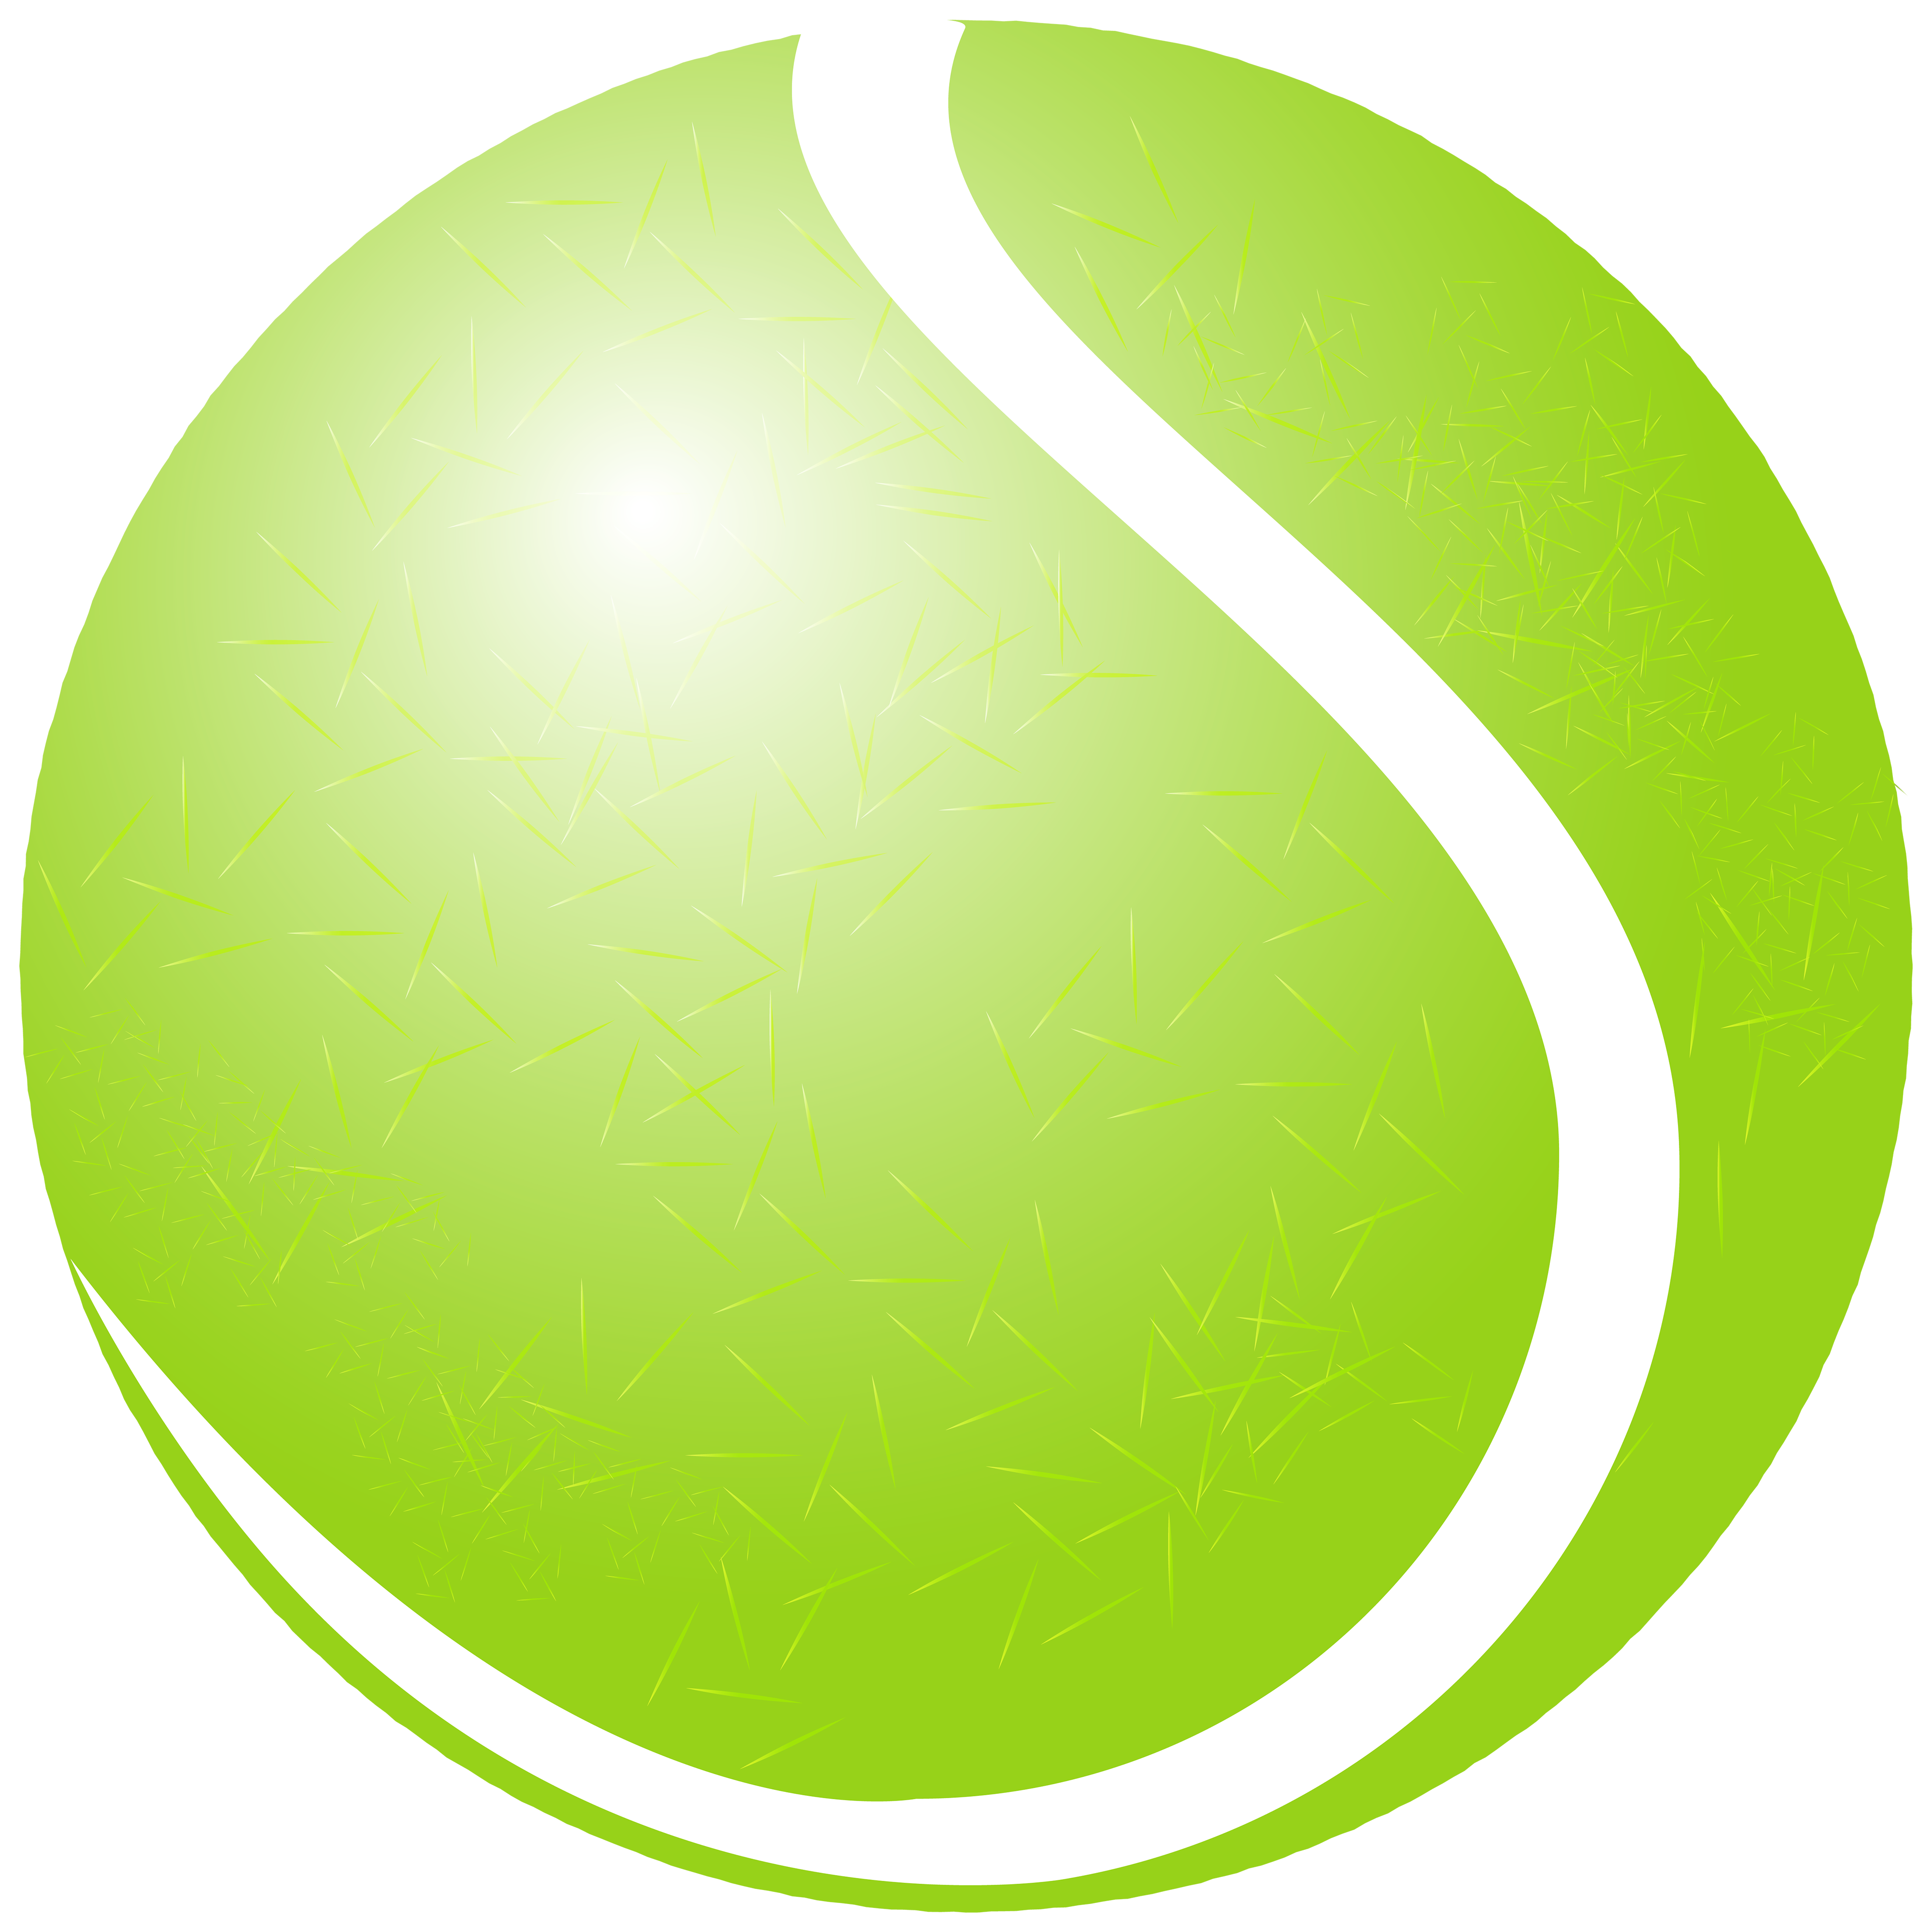 Теннисный мяч PNG фоновое изображение